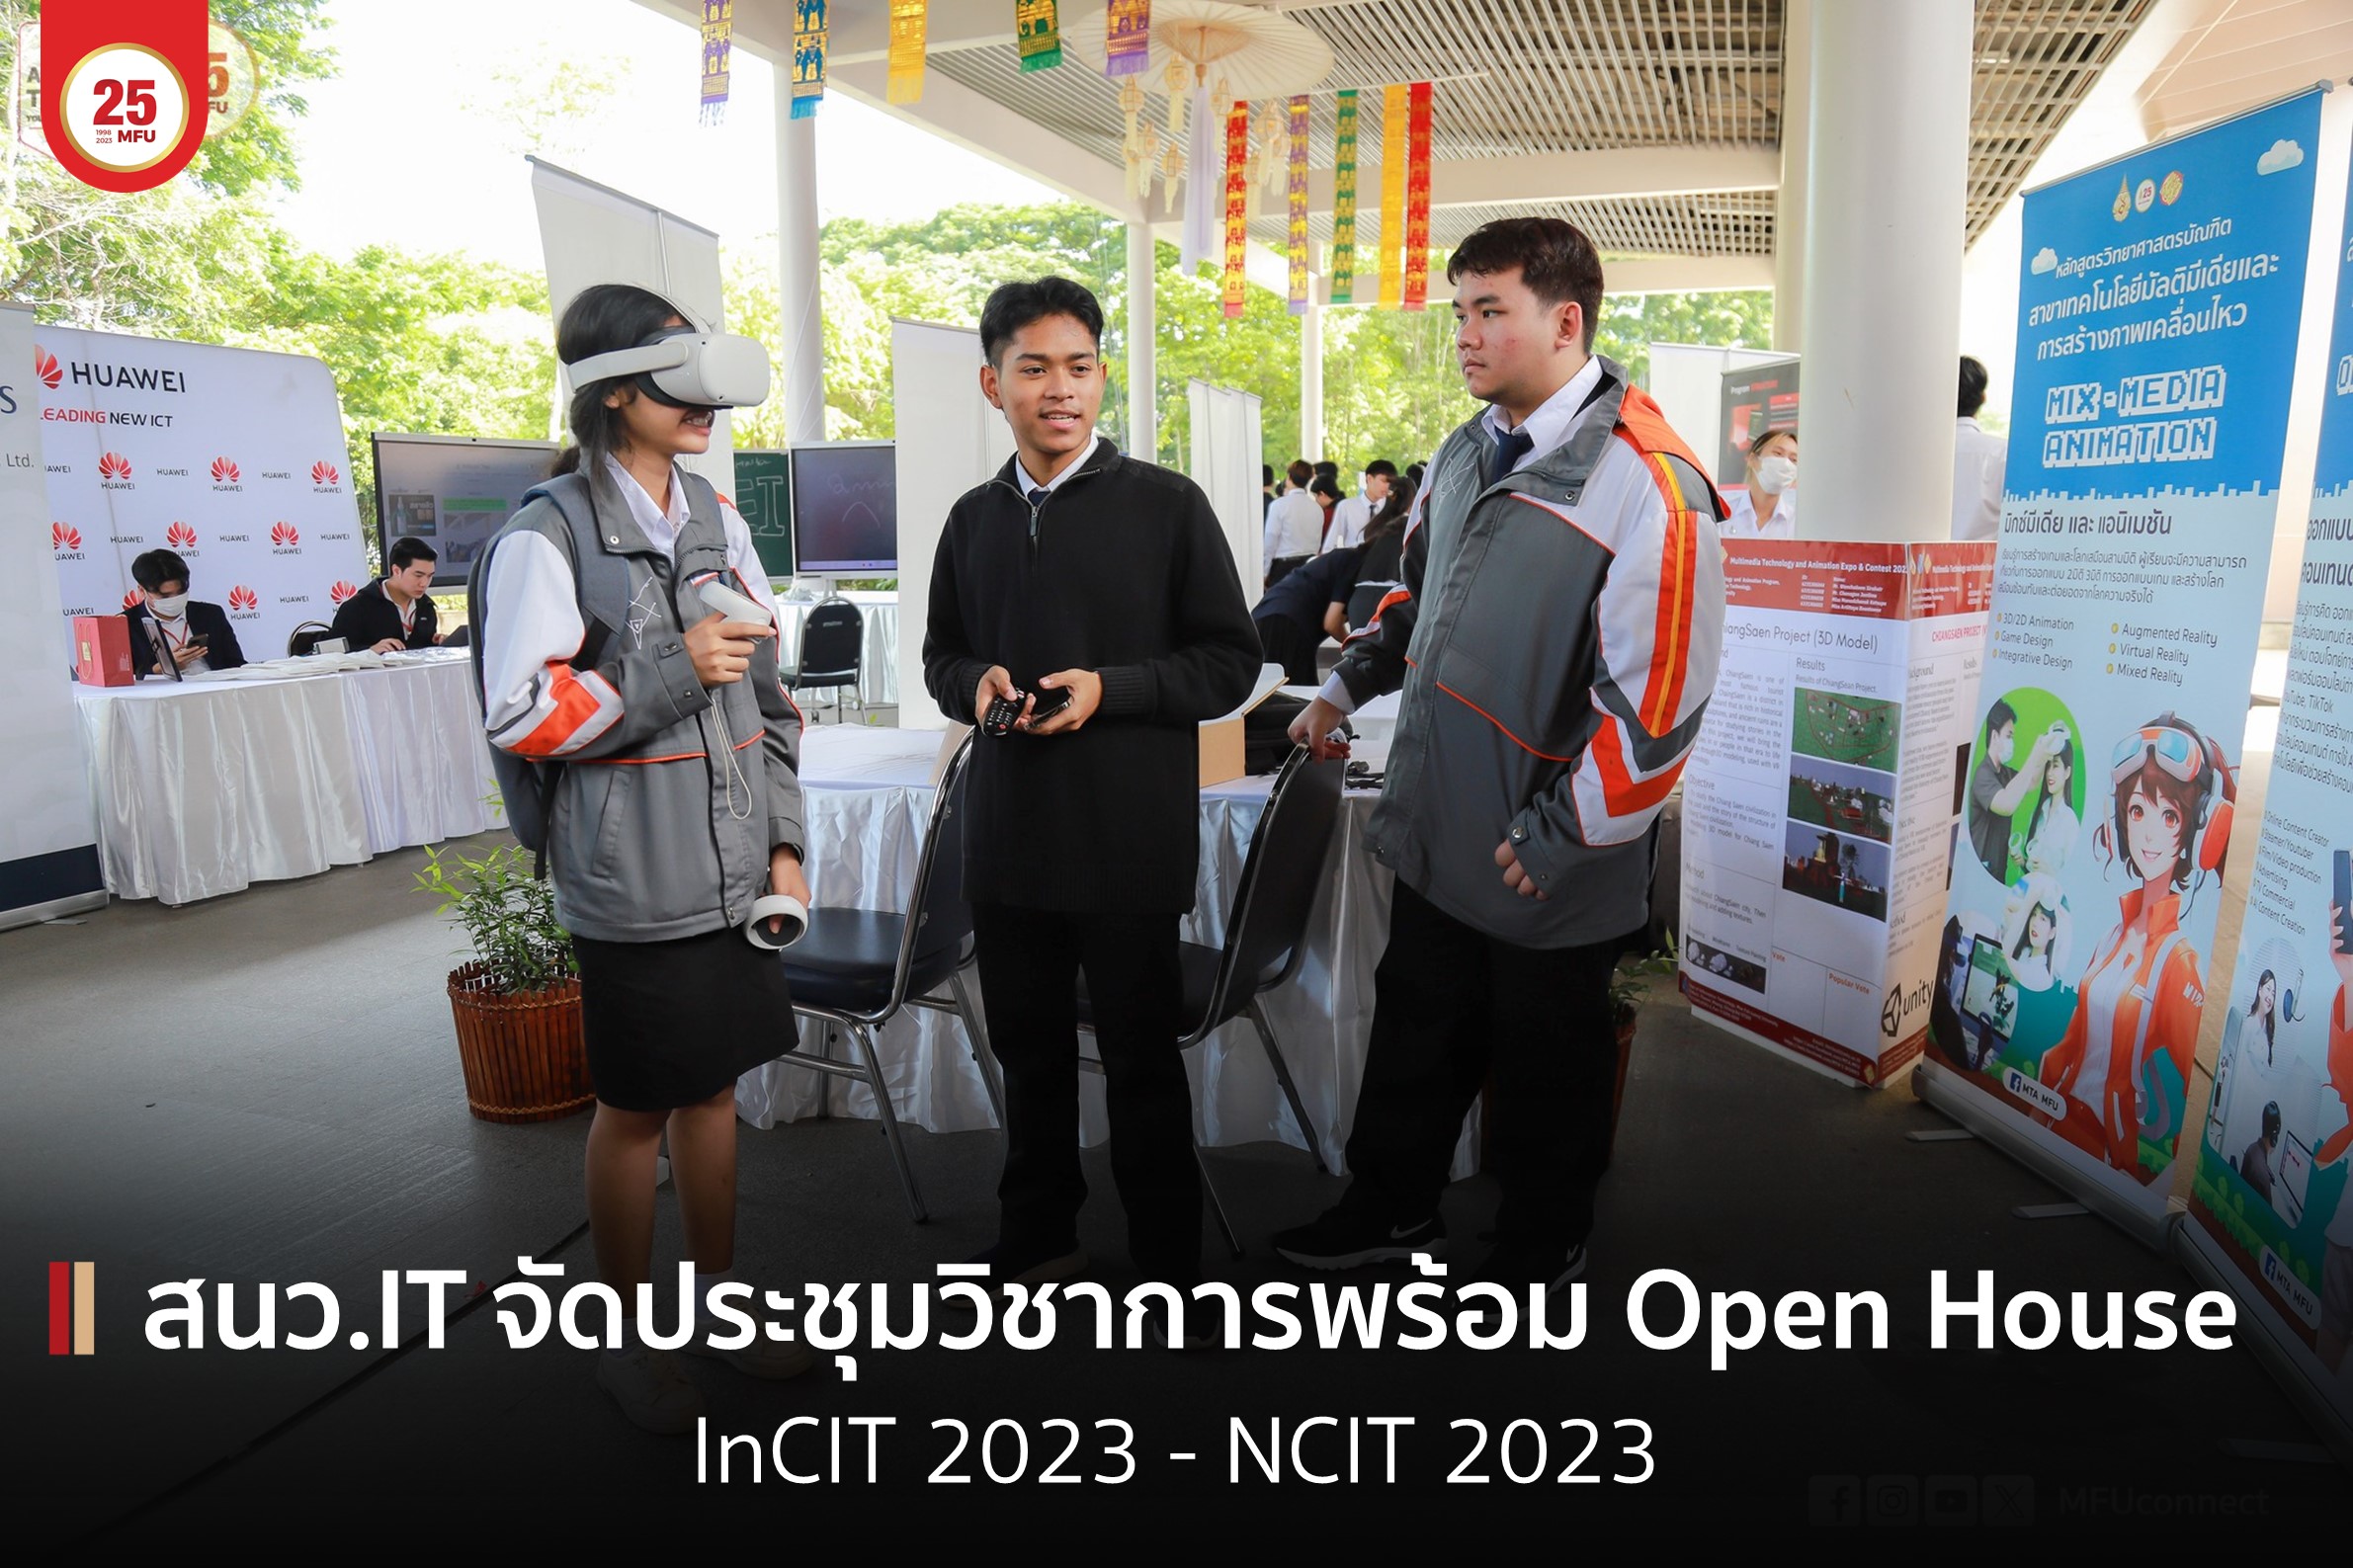 สำนักวิชาเทคโนโลยีสารสนเทศเป็นเจ้าภาพจัดการประชุม InCIT 2023 คู่ขนานกับ NCIT 2023 พร้อมจัดกิจกรรม IT Open House